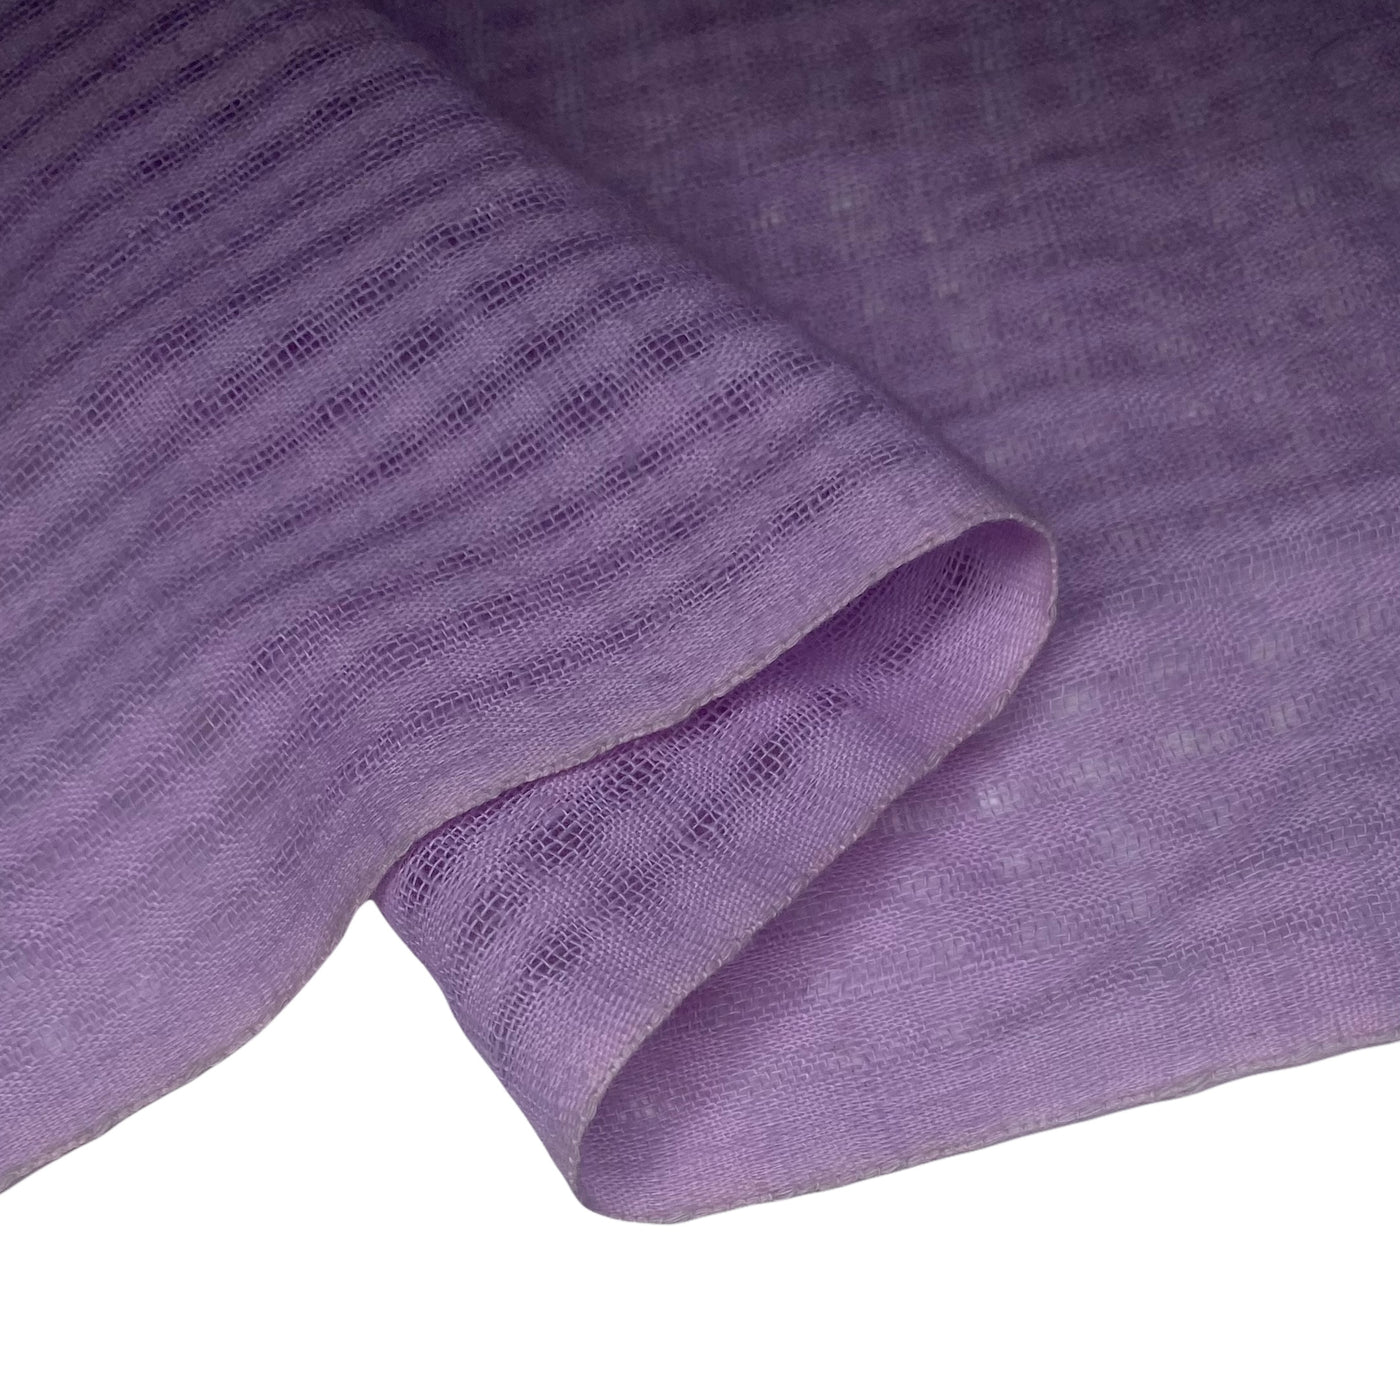 Plaid Cotton Gauze - 44” - Purple